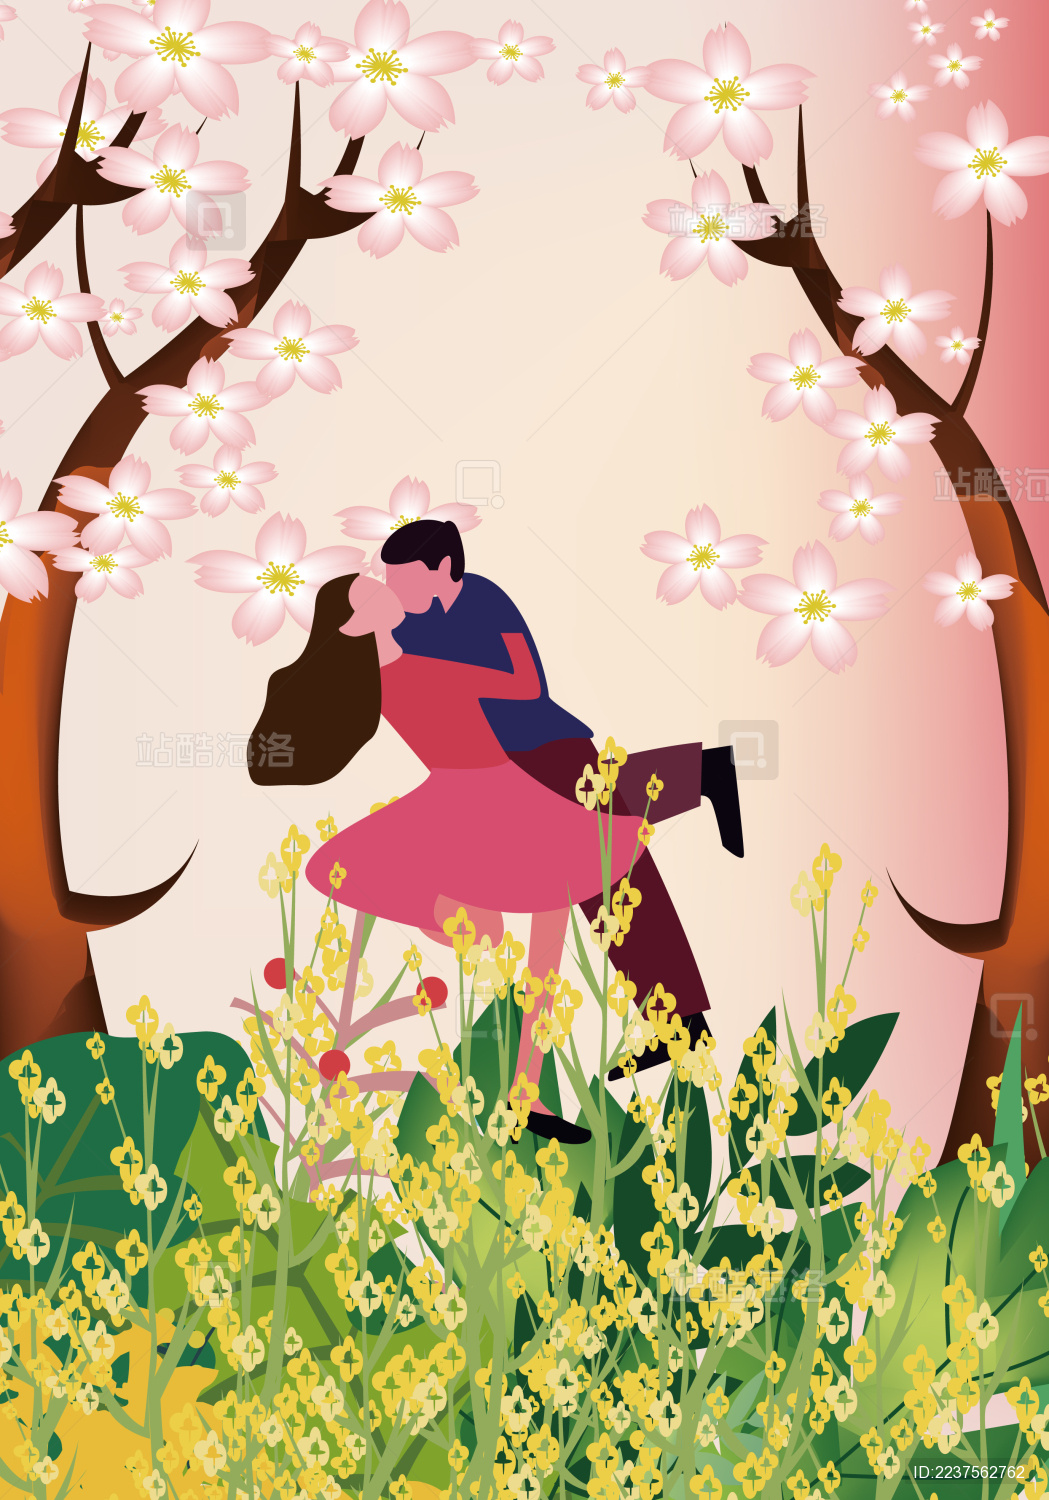 快乐的年轻情侣在树林散步-蓝牛仔影像-中国原创广告影像素材